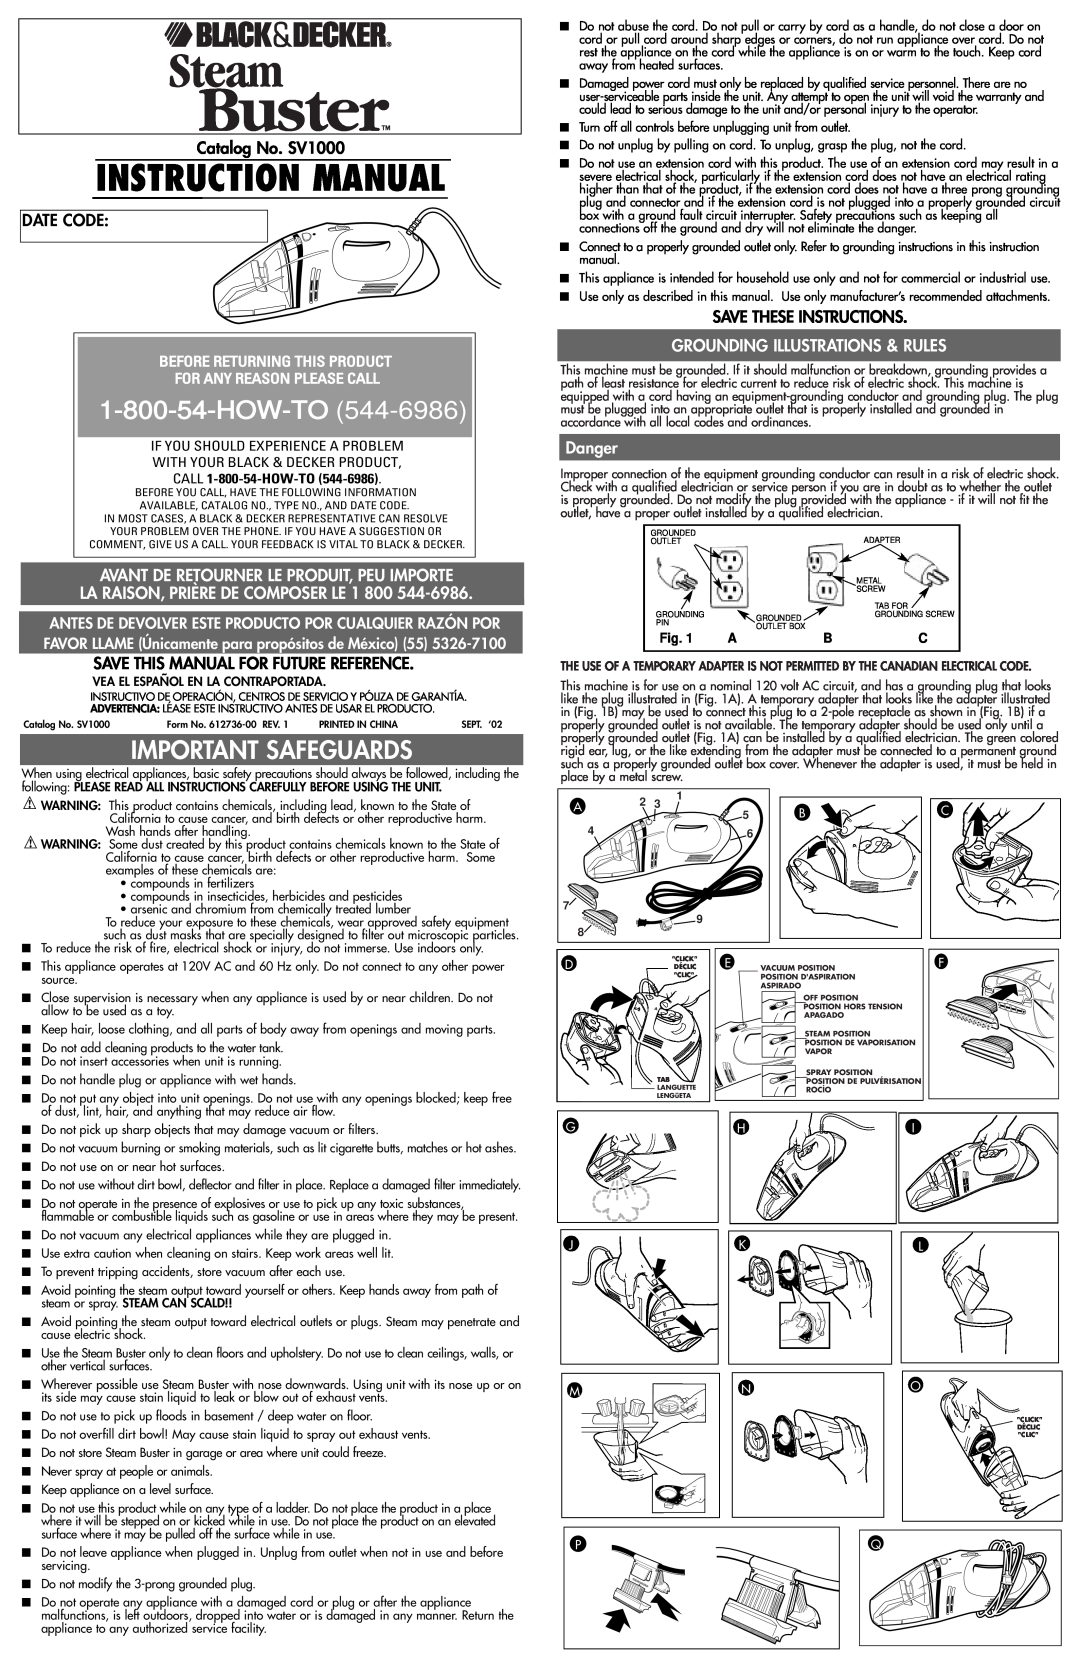 Black & Decker 612736-00 instruction manual Important Safeguards, Avant De Retourner Le Produit, Peu Importe, Danger 